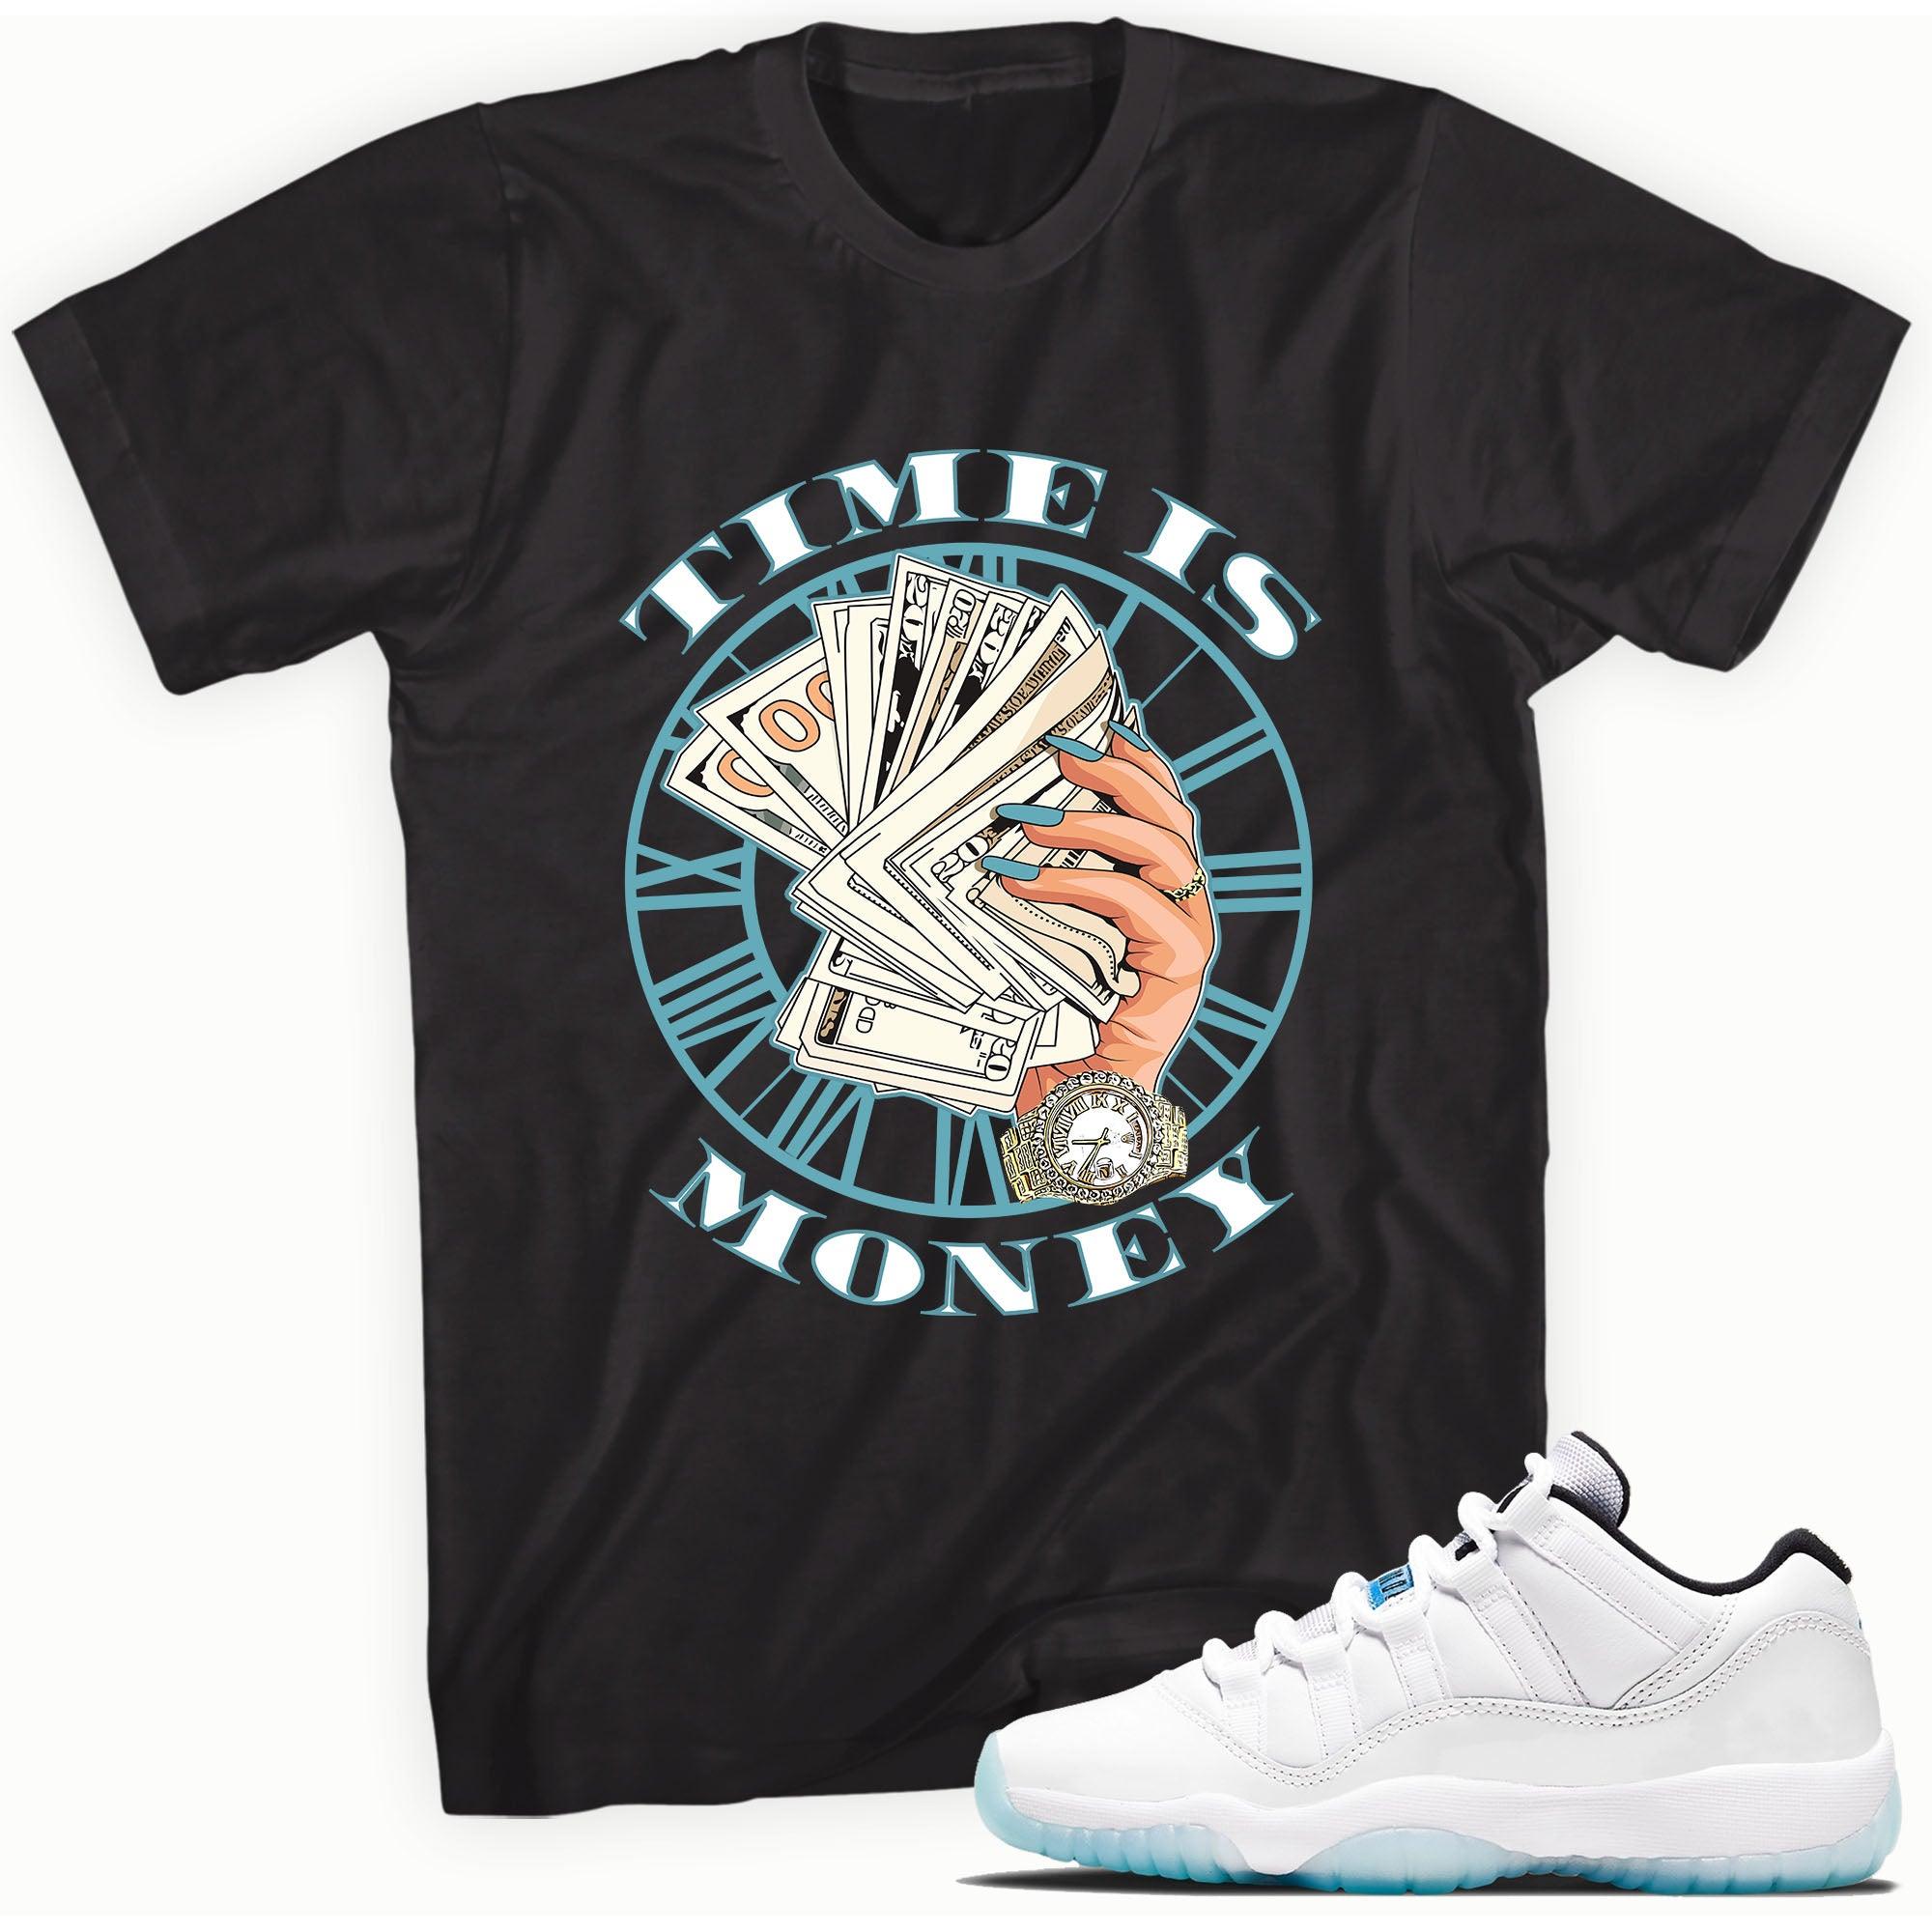 Black Time is Money Shirt AJ 11s Retro Low Legend Blue photo